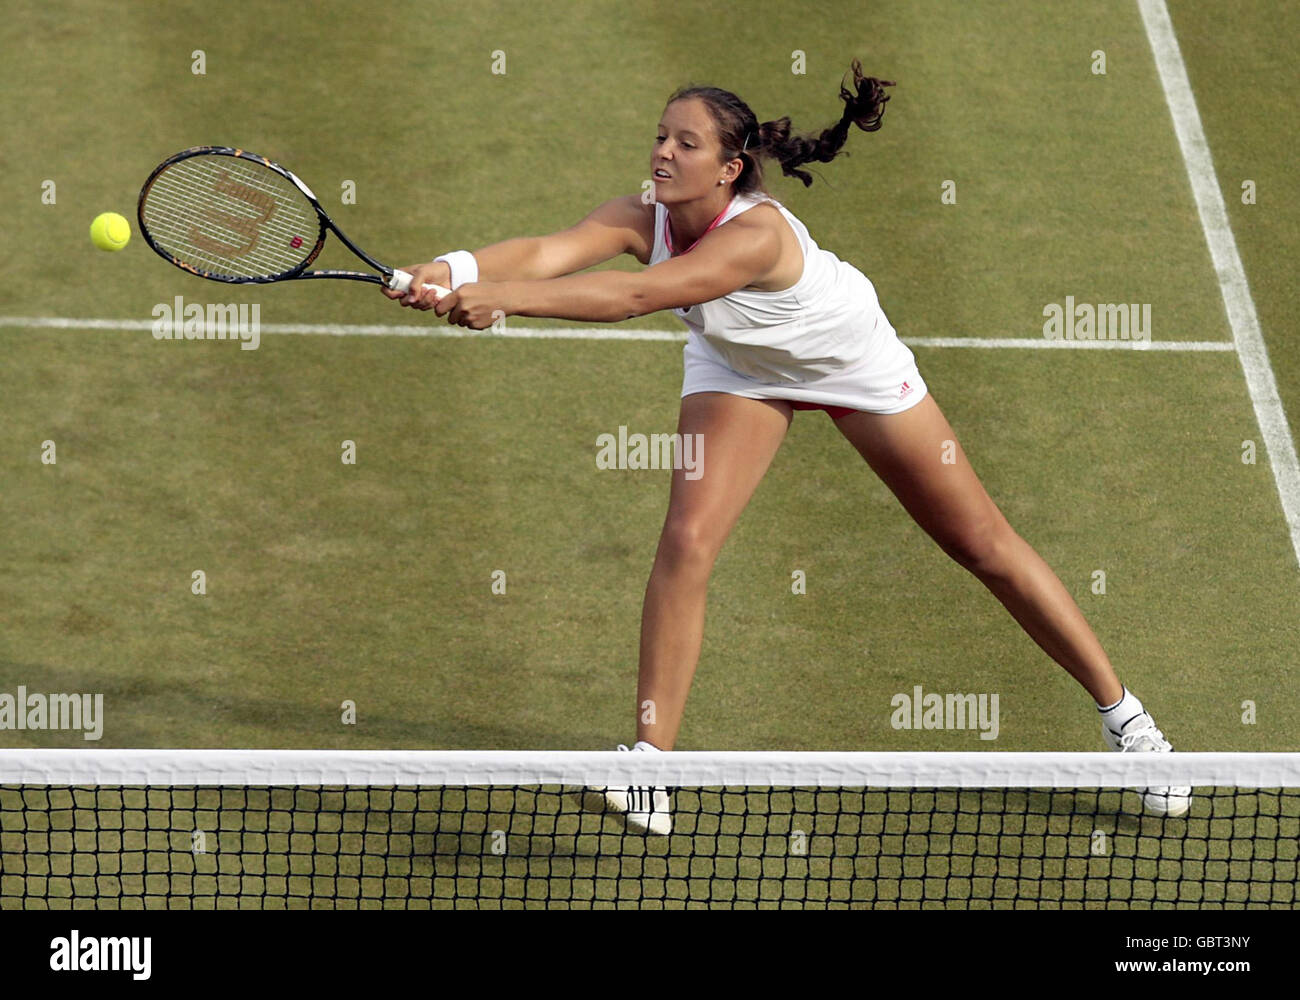 Laura Robson della Gran Bretagna in azione durante il suo primo round le donne raddoppia match al Wimbledon Championships 2009 presso l'All England Lawn Tennis and Croquet Club, Wimbledon, Londra. Foto Stock